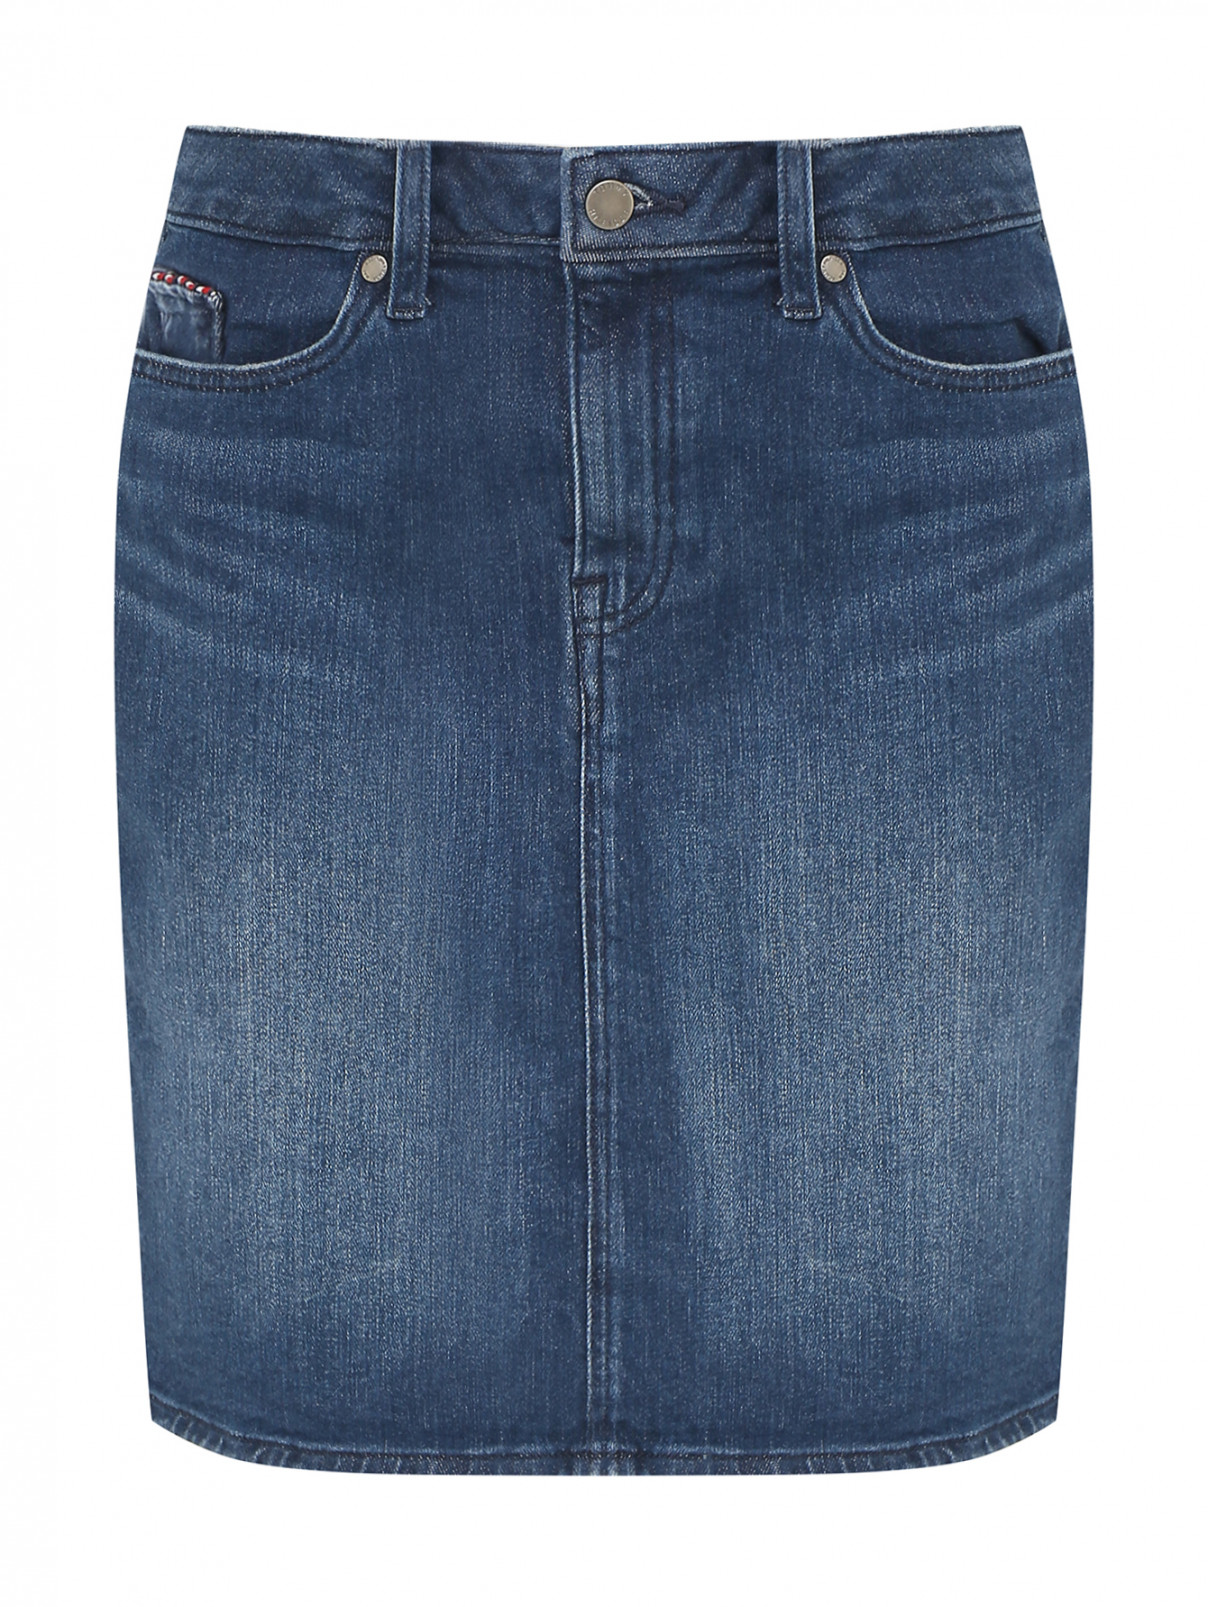 Джинсовая юбка с карманами Tommy Hilfiger  –  Общий вид  – Цвет:  Синий